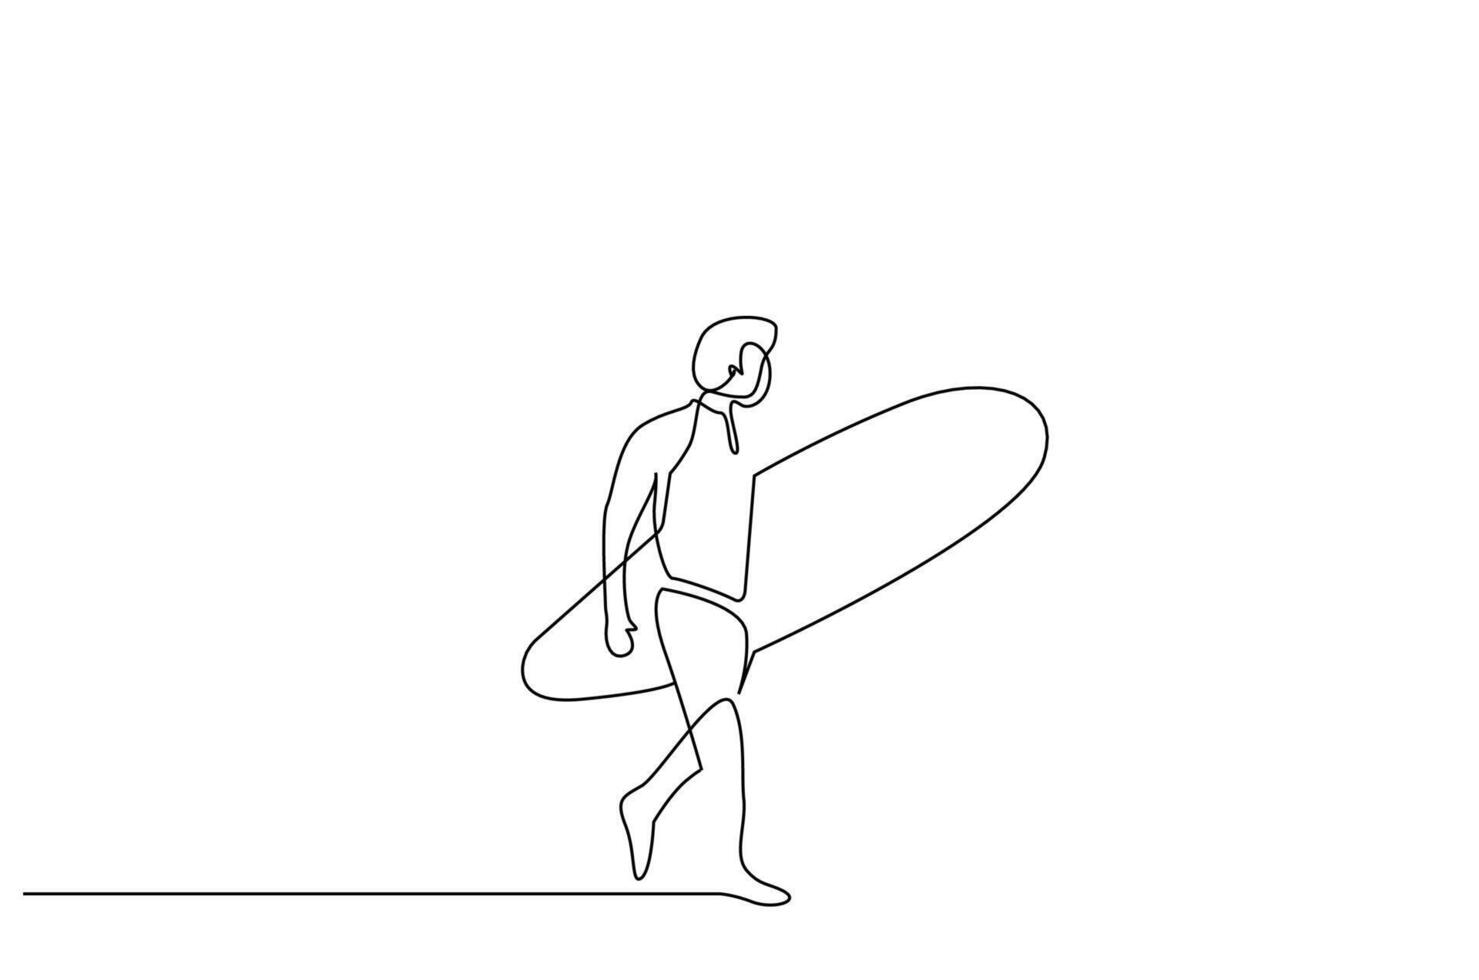 Masculin la personne été activité planche de surf sport un ligne art conception vecteur